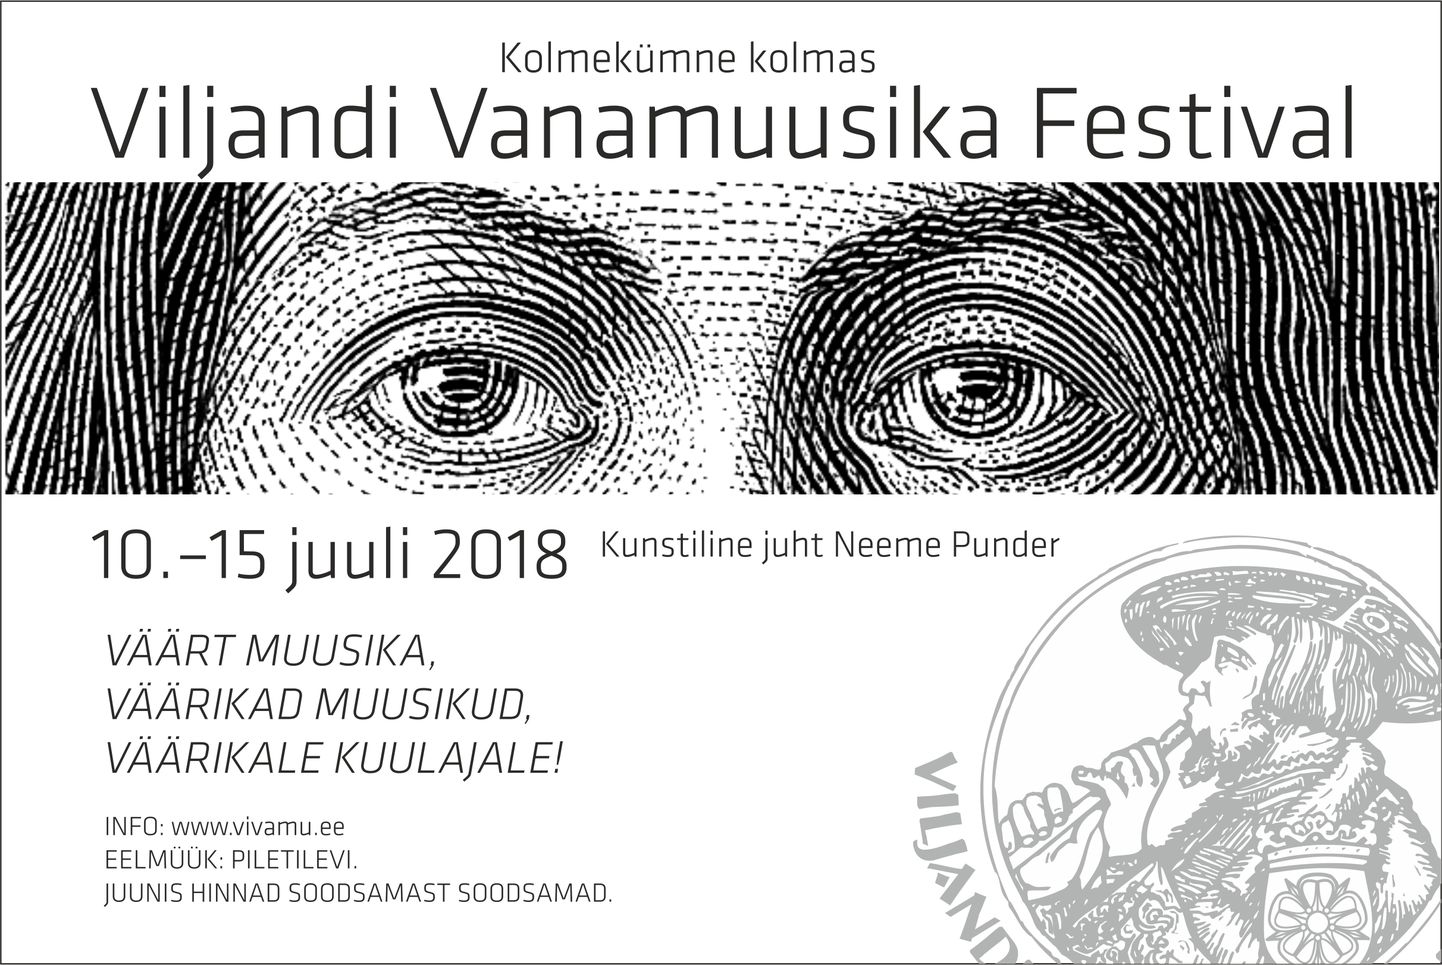 Viljandi vanamuusika festival esitleb: Viljandi babtistikirikus esineb täna kell 19 Venemaa muusik Aleksei Ljubimov.